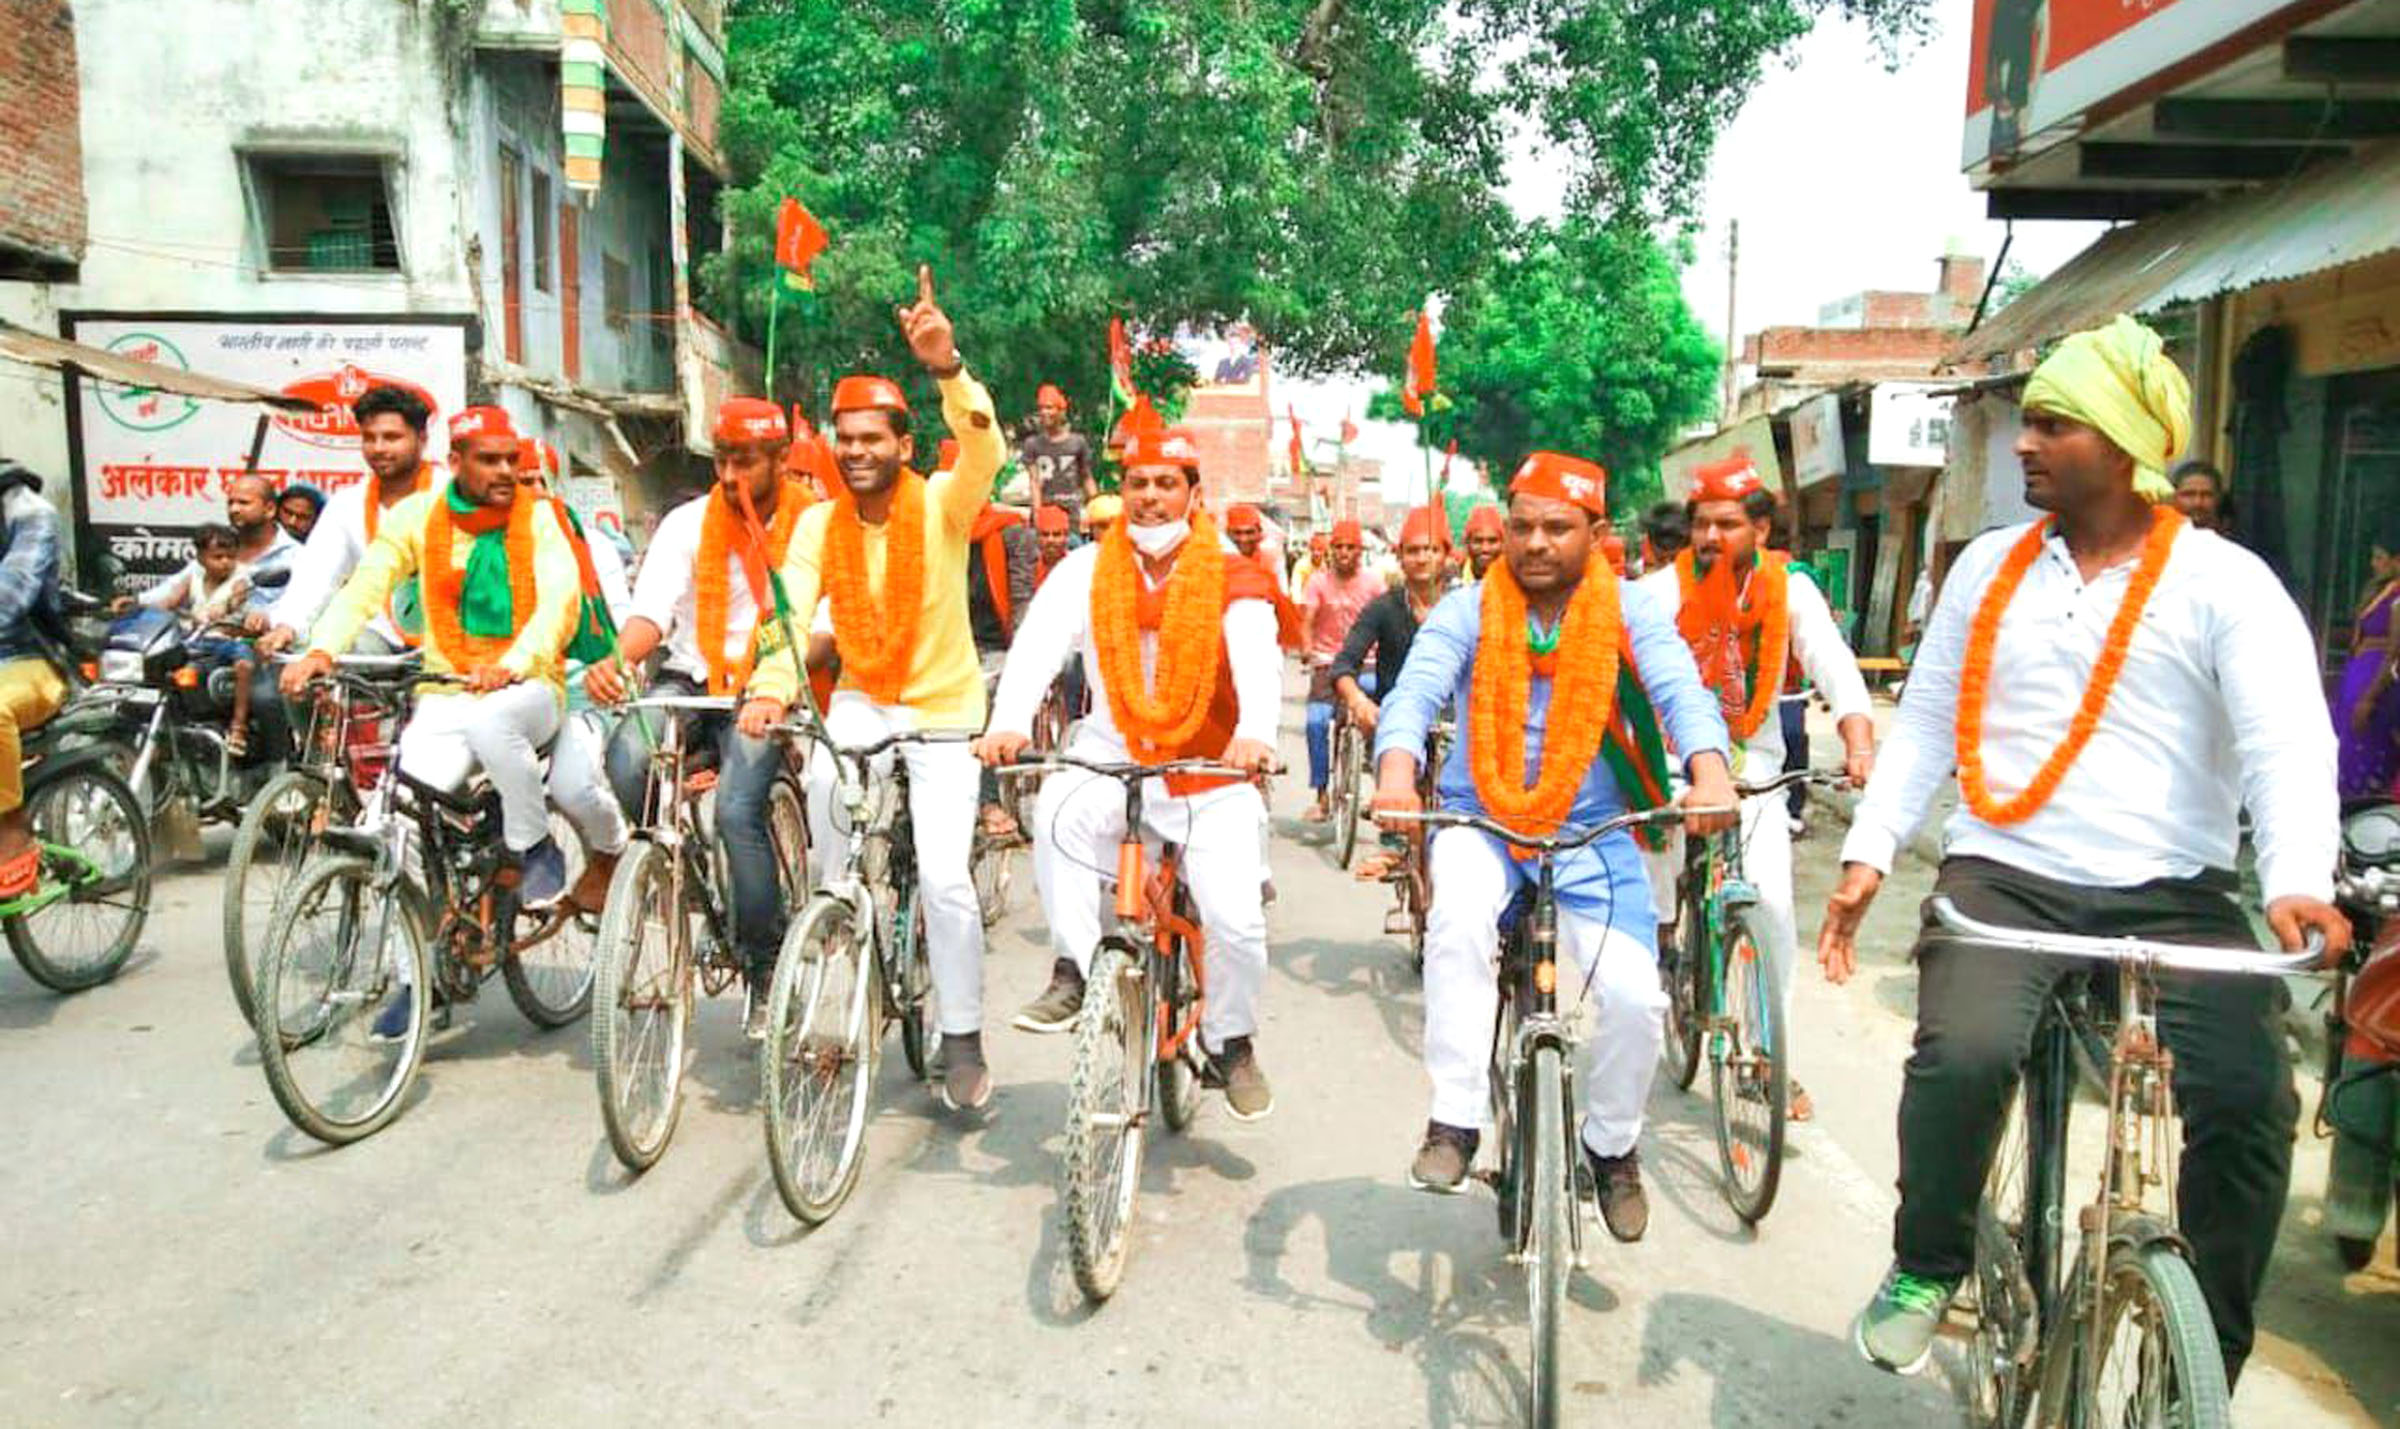 युवा सपाजनों ने भाजपा सरकार की जनविरोधी नीतियों को लेकर साइकिल चलाकर किया विरोध प्रदर्शन | #TEJASTODAY जौनपुर। जनपद के मल्हनी विधानसभा क्षेत्र के लाला बाजार, गुलजारगंज, सिकरारा, समाधगंज में साइकिल रैली का आयोजन हुआ जो मुलायम सिंह यूथ ब्रिगेड के जिलाध्यक्ष गुड्डू सोनकर, लोहिया वाहिनी के जिलाध्यक्ष भानु प्रताप मौर्य, युवजन सभा के जिलाध्यक्ष डा. शिवजी समाजवादी, तिलकधारी महाविद्यालय के छात्रसंघ उपाध्यक्ष कौशल यादव, रजनीश यादव, शिवम यादव के संयुक्त नेतृत्व में हुआ। सपाजनों ने साइकिल चलाकर भाजपा सरकार की जनविरोधी नीतियों और नाकामियों को बताने का काम किया। इस दौरान उपरोक्त पदाधिकारियों ने कहा कि भाजपा सरकार की नियत और नीति, पहले शिक्षा और शिक्षण संस्थानों पर हमला, छात्रों को मिलने वाले निःशुल्क प्रवेश, छात्रवृत्ति पर हमला, आरक्षण की समाप्ति, संस्थानों का निजीकरण, 5 वर्ष तक संविदा पर नौकरी की मानसिकता हम समाजवादी कभी बर्दाश्त नहीं करेंगे। इस अवसर पर विक्रम सिंह, युवराज सोनकर, धनंजय यादव, काशी, रोहित यादव, अभिषेक पंडित, विक्की सोनकर, शिवम जायसवाल, निखिल यादव, शिवम यादव, प्रदुम शर्मा, ऋषि यादव, अमित शर्मा, अशोक मिश्रा, विवेक मौर्य, शुभम मौर्य, शिवजीत पाण्डेय सहित सैकड़ों समाजवादी कार्यकर्ता उपस्थित रहे। ब्रेकिंग खबरों से अपडेट रहने के लिए आज ही प्ले स्टोर या इस लिंक पर क्लिक कर tejastoday.com Apps इंस्टॉल करें https://play.google.com/store/apps/details?id=com.tejastoday.news लाइक करके जुड़ जाइए इस पेज से और पढ़िए ब्रेकिग खबरें....